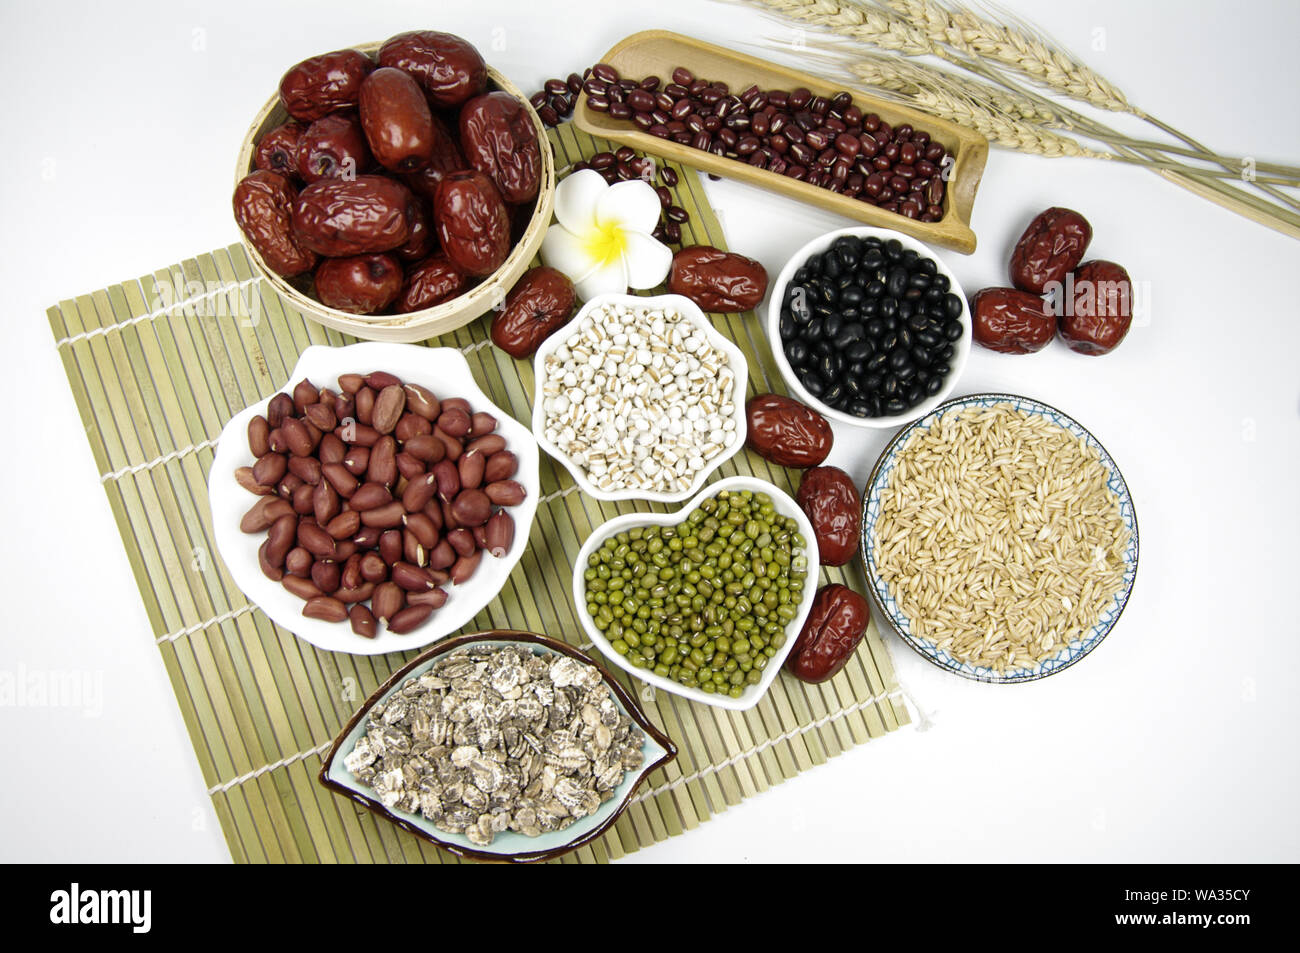 Rice porridge ingredients Stock Photo